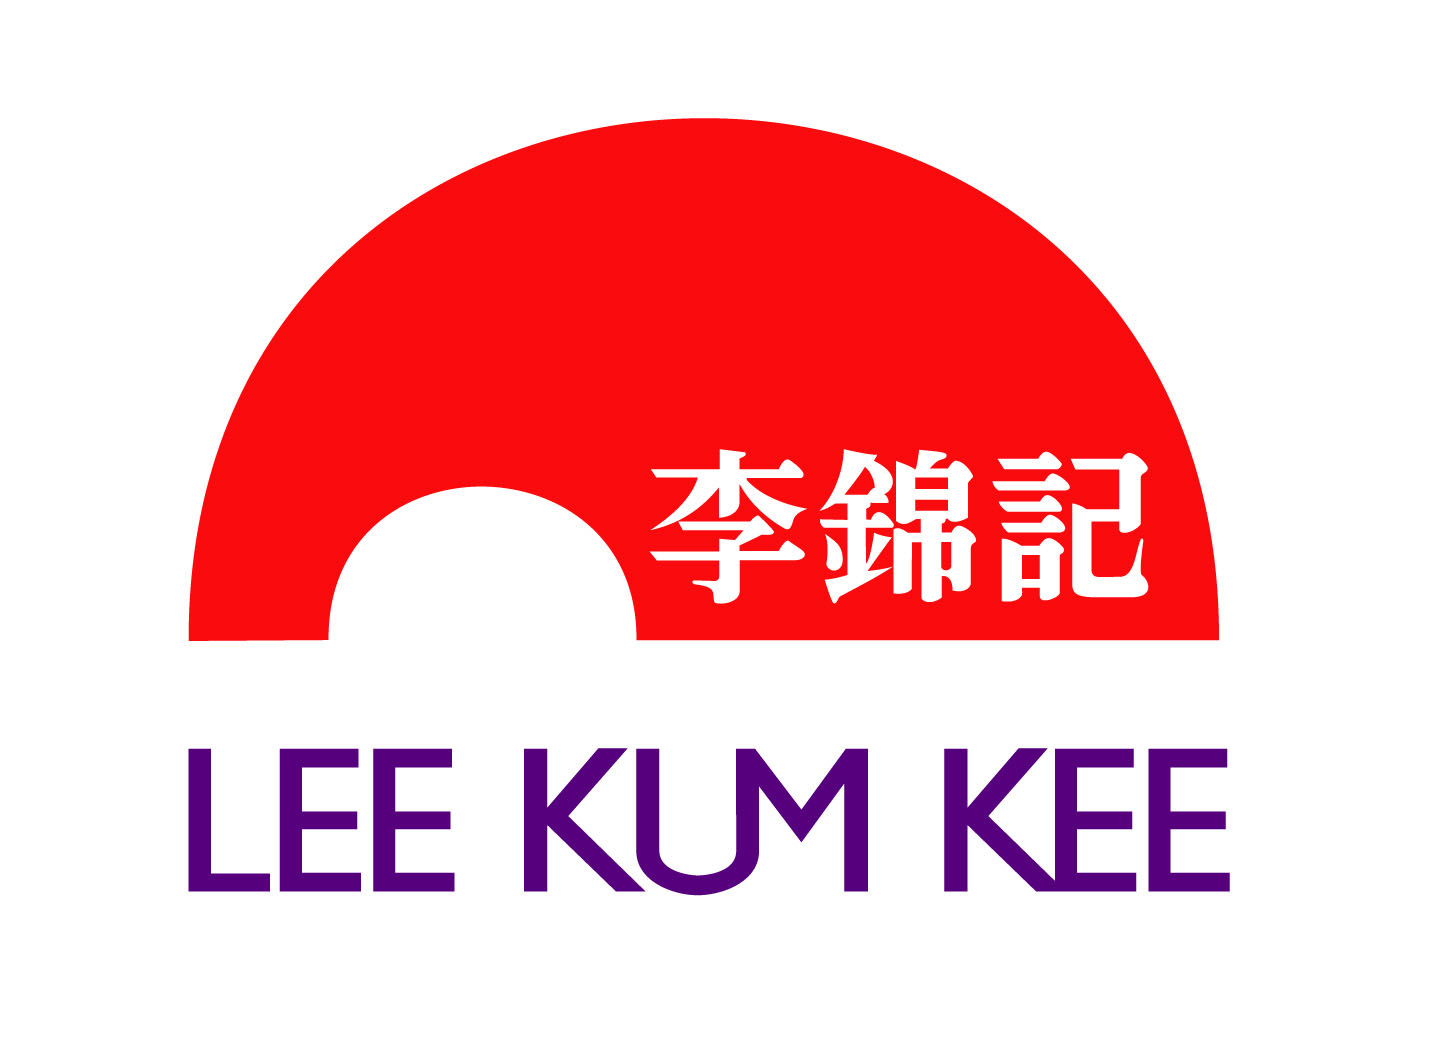 LKK Bridge ( Lee Kum Kee)